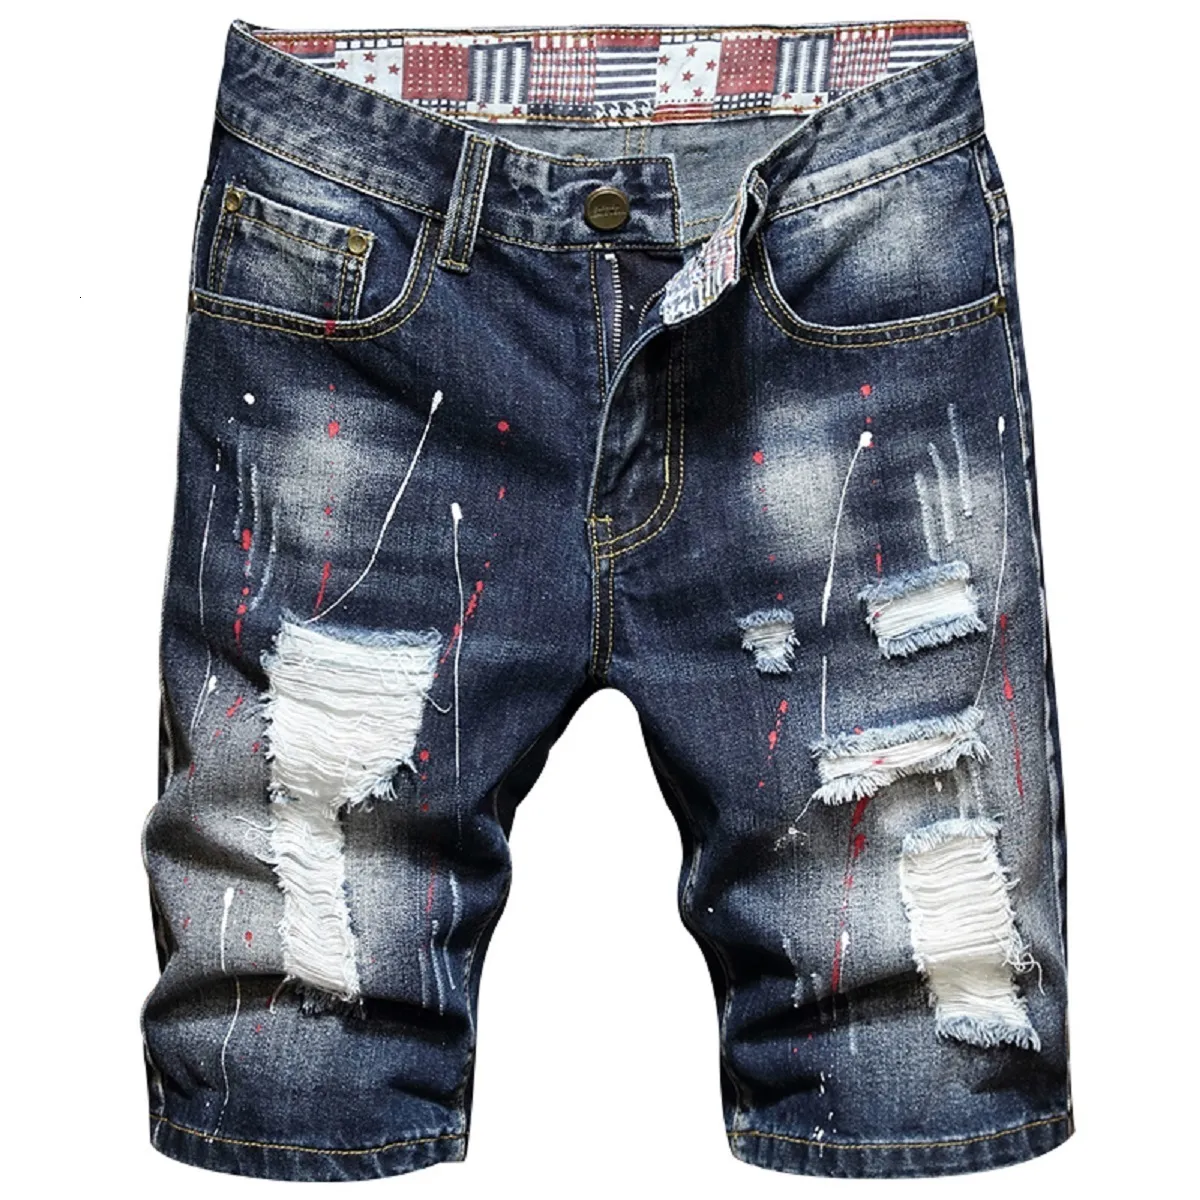 Hommes Jeans Hommes Déchiré Court Jeans Vêtements Bermuda Coton Shorts Respirant Denim Shorts Homme Mode Taille 28-40 230519